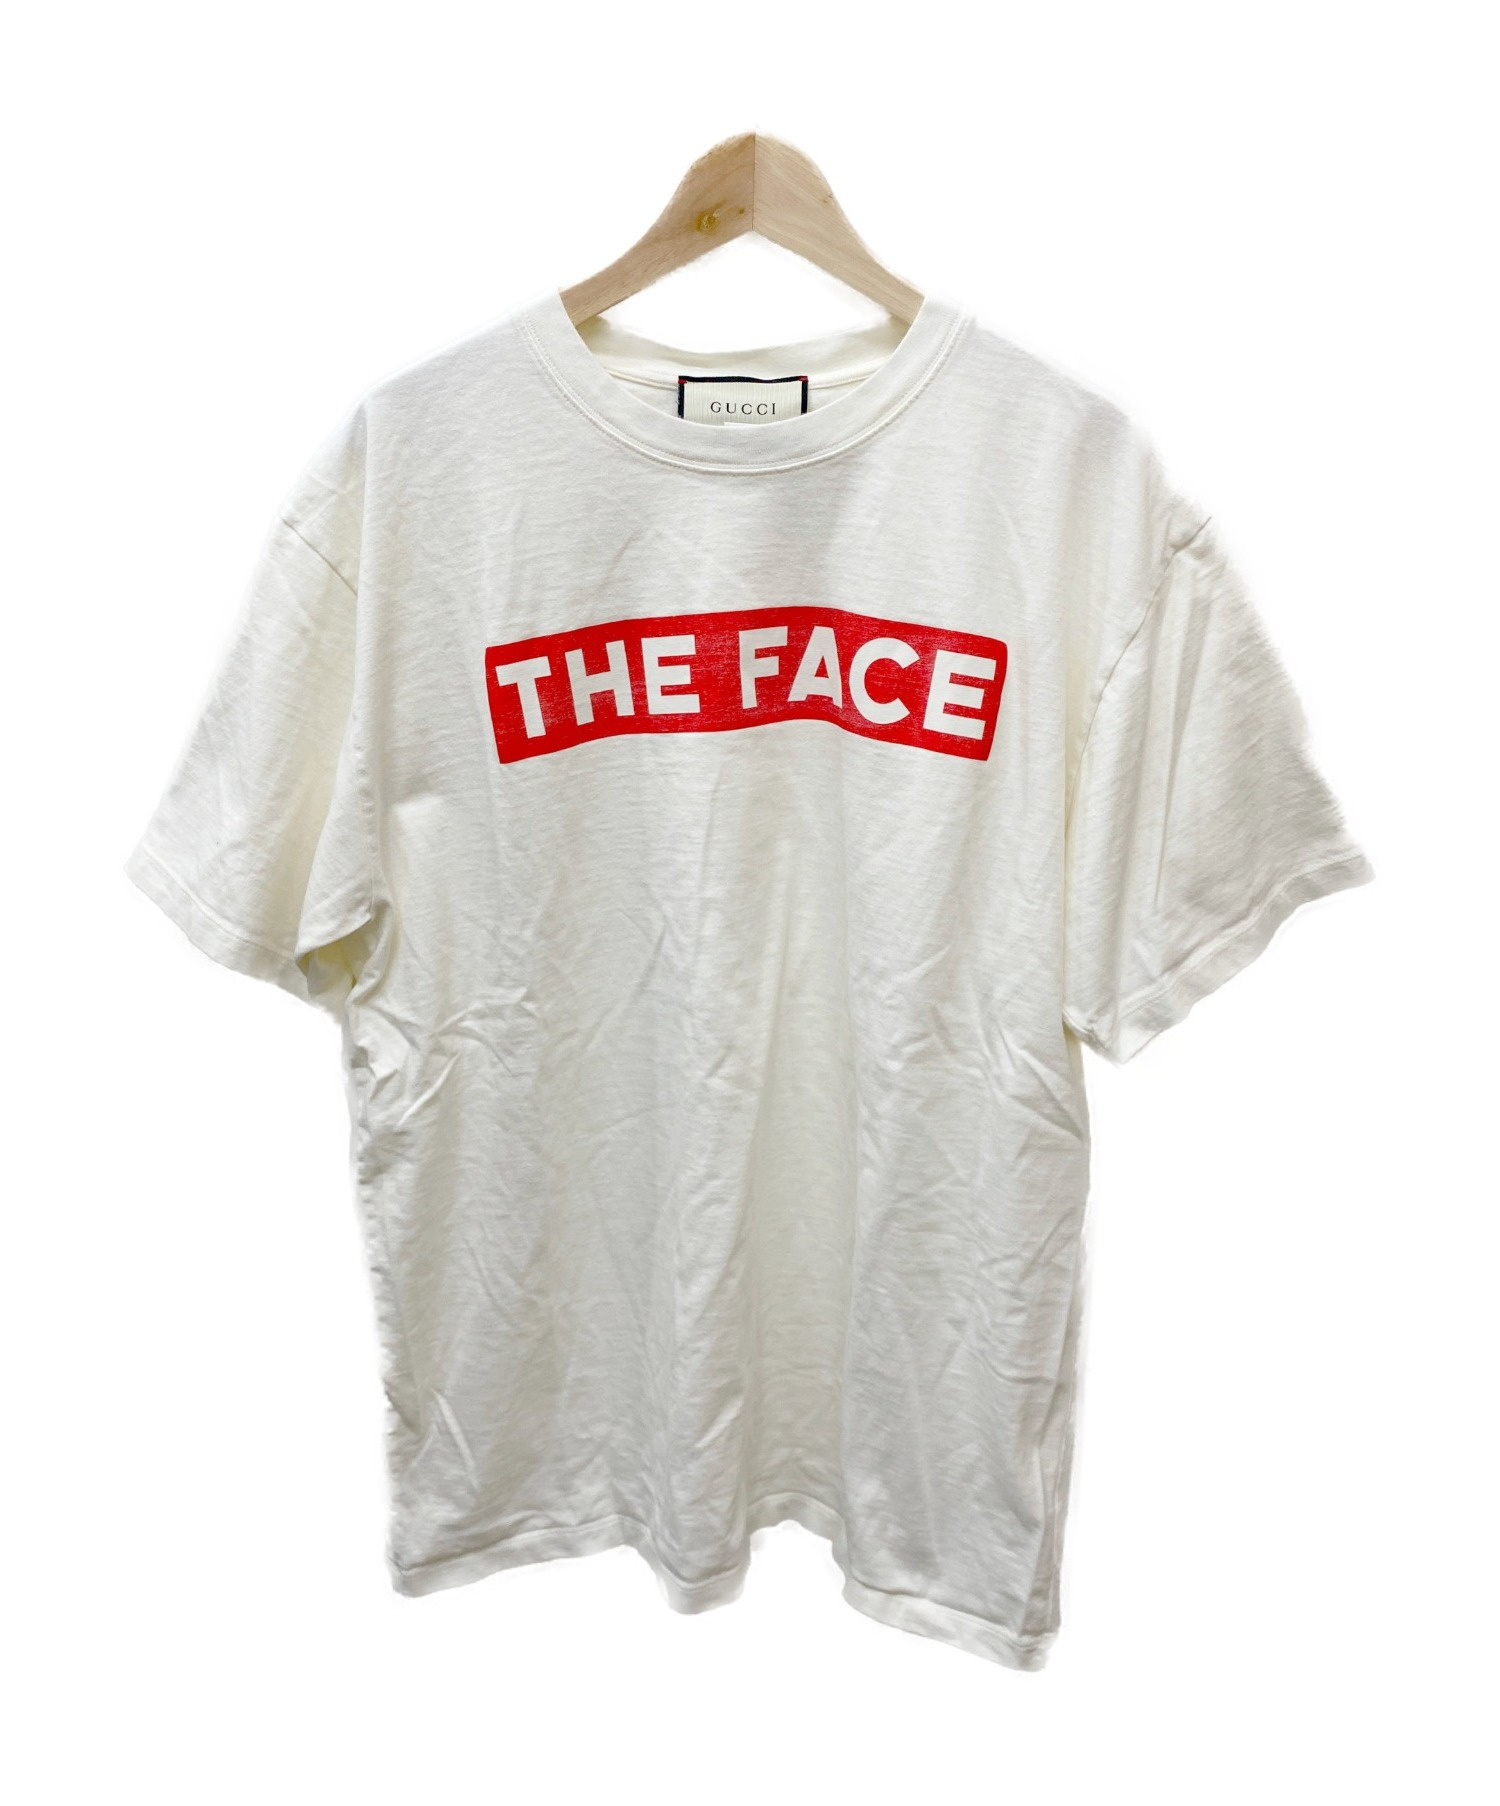 GUCCI (グッチ) THE FACE Tシャツ ベージュ サイズ:L 19SS